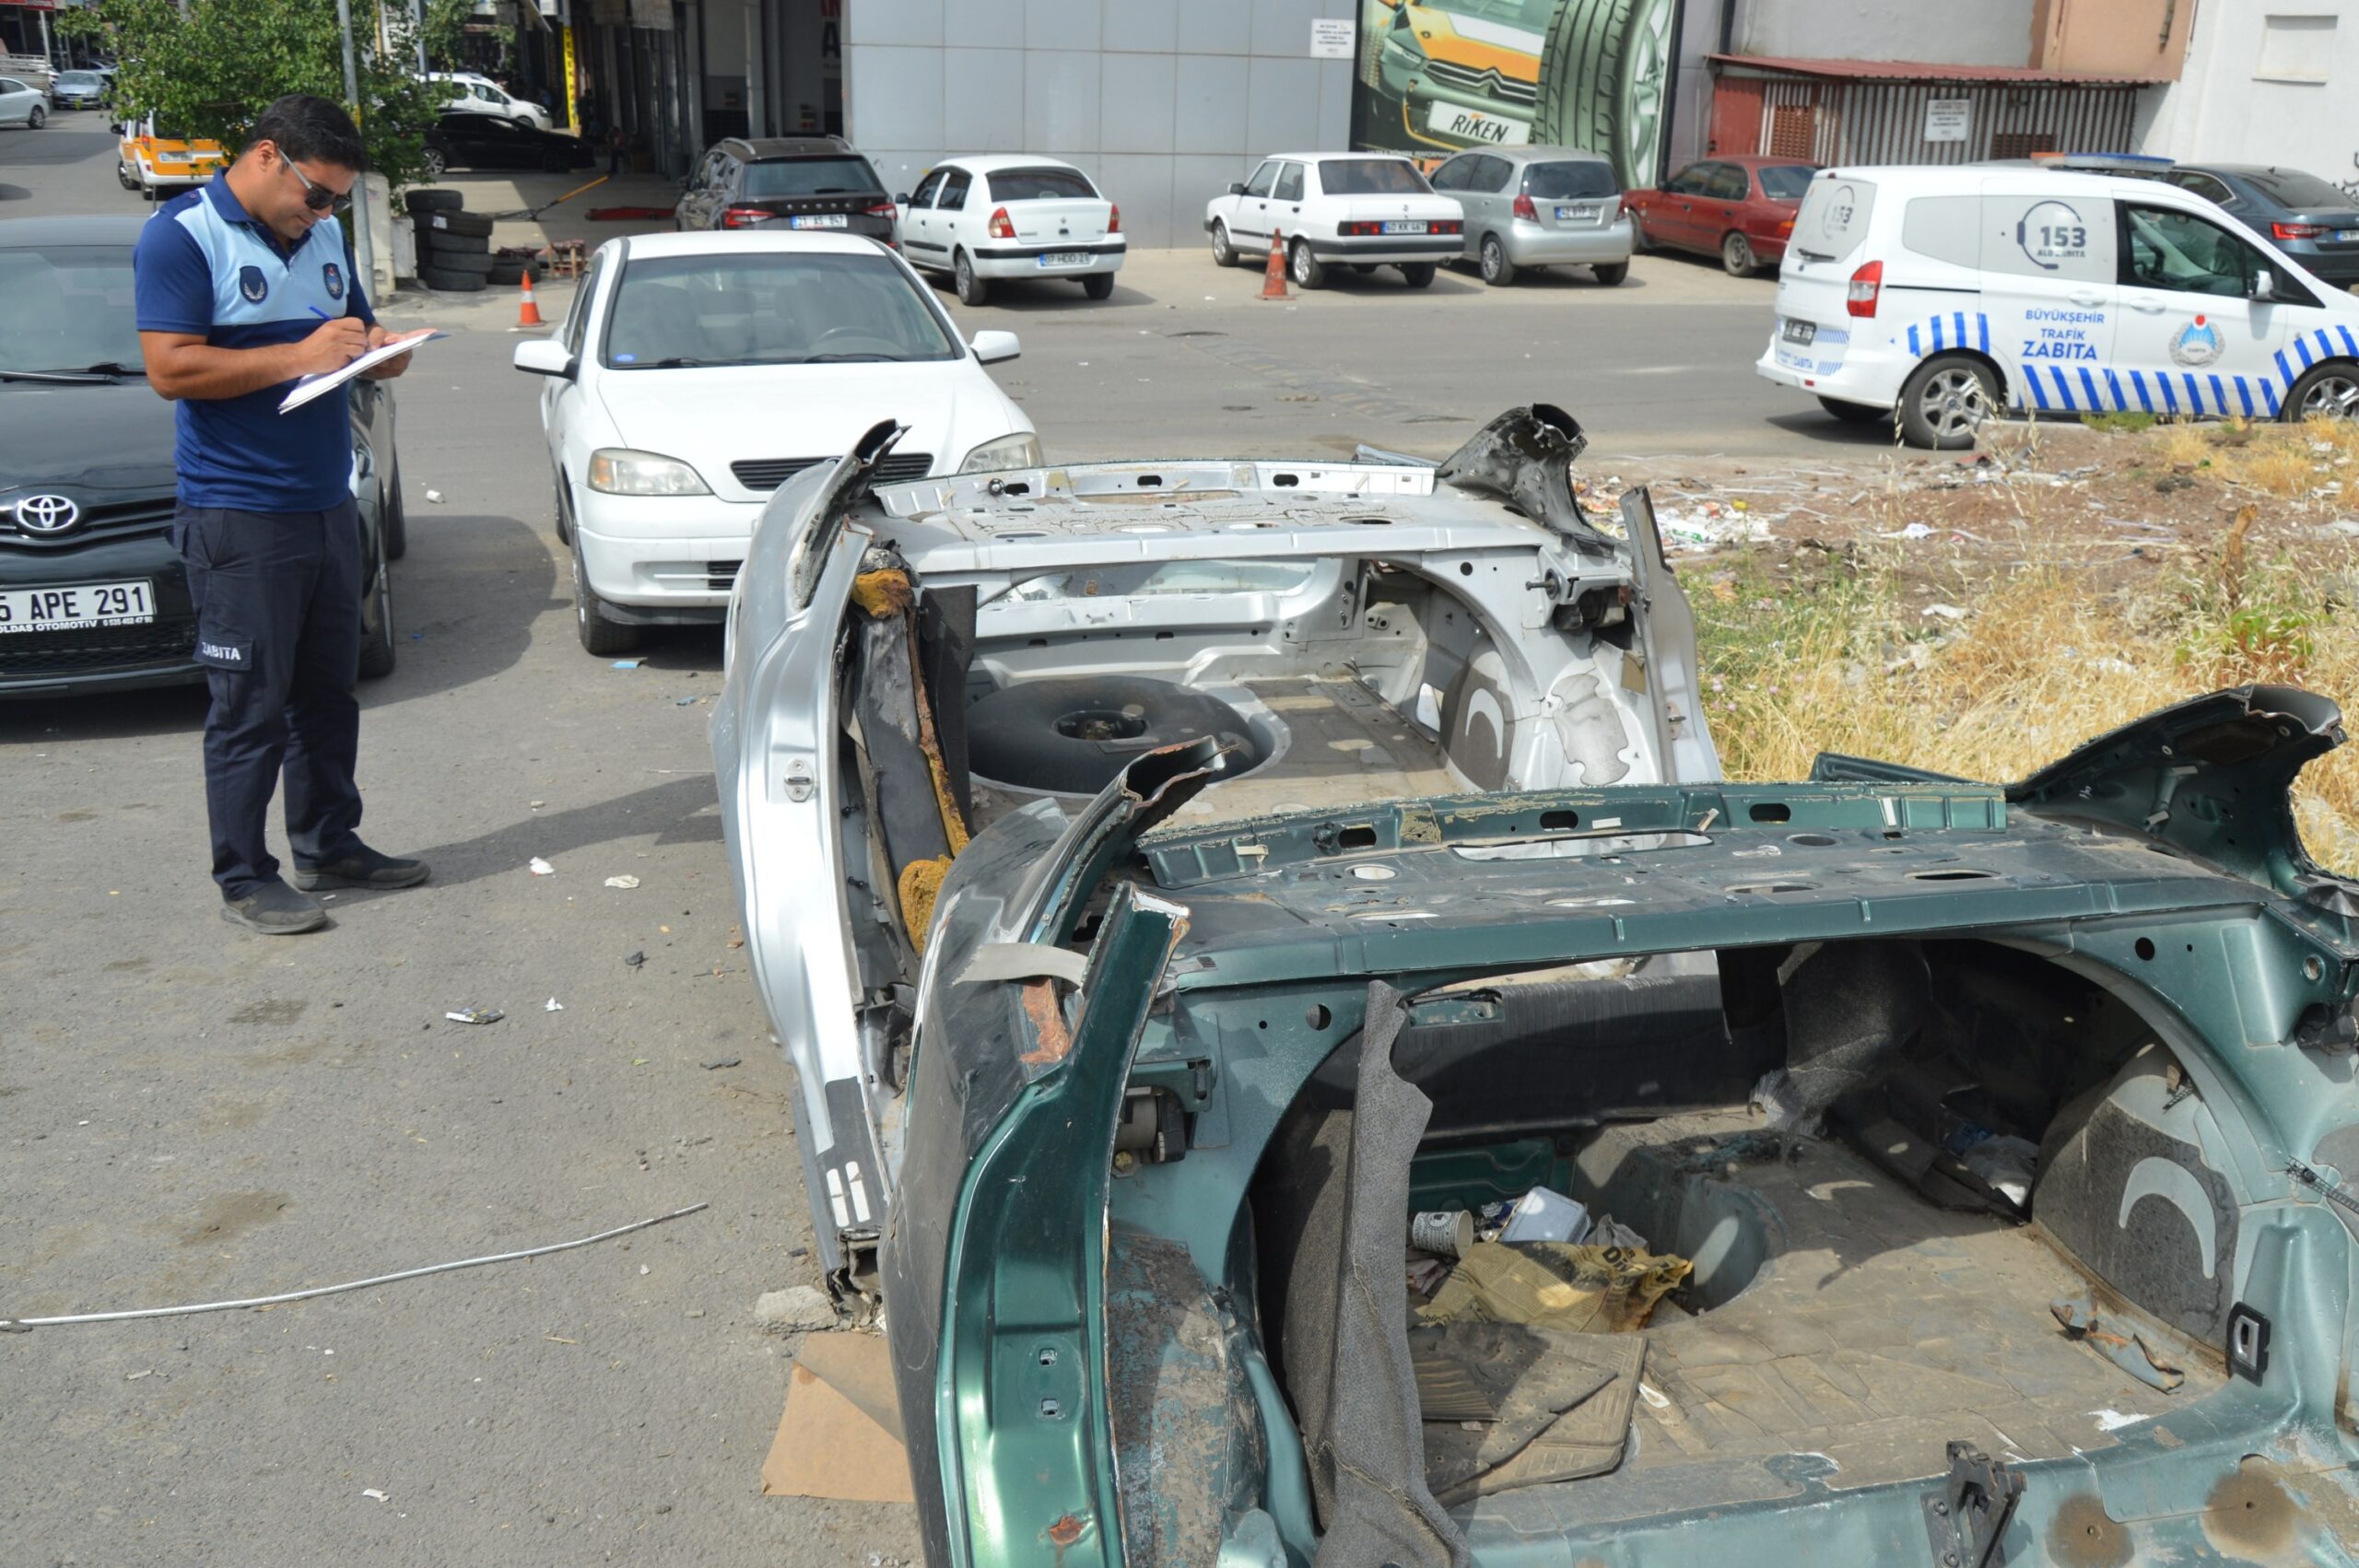 Büyükşehir Belediyesinden hurda araçlara ilişkin uyarı